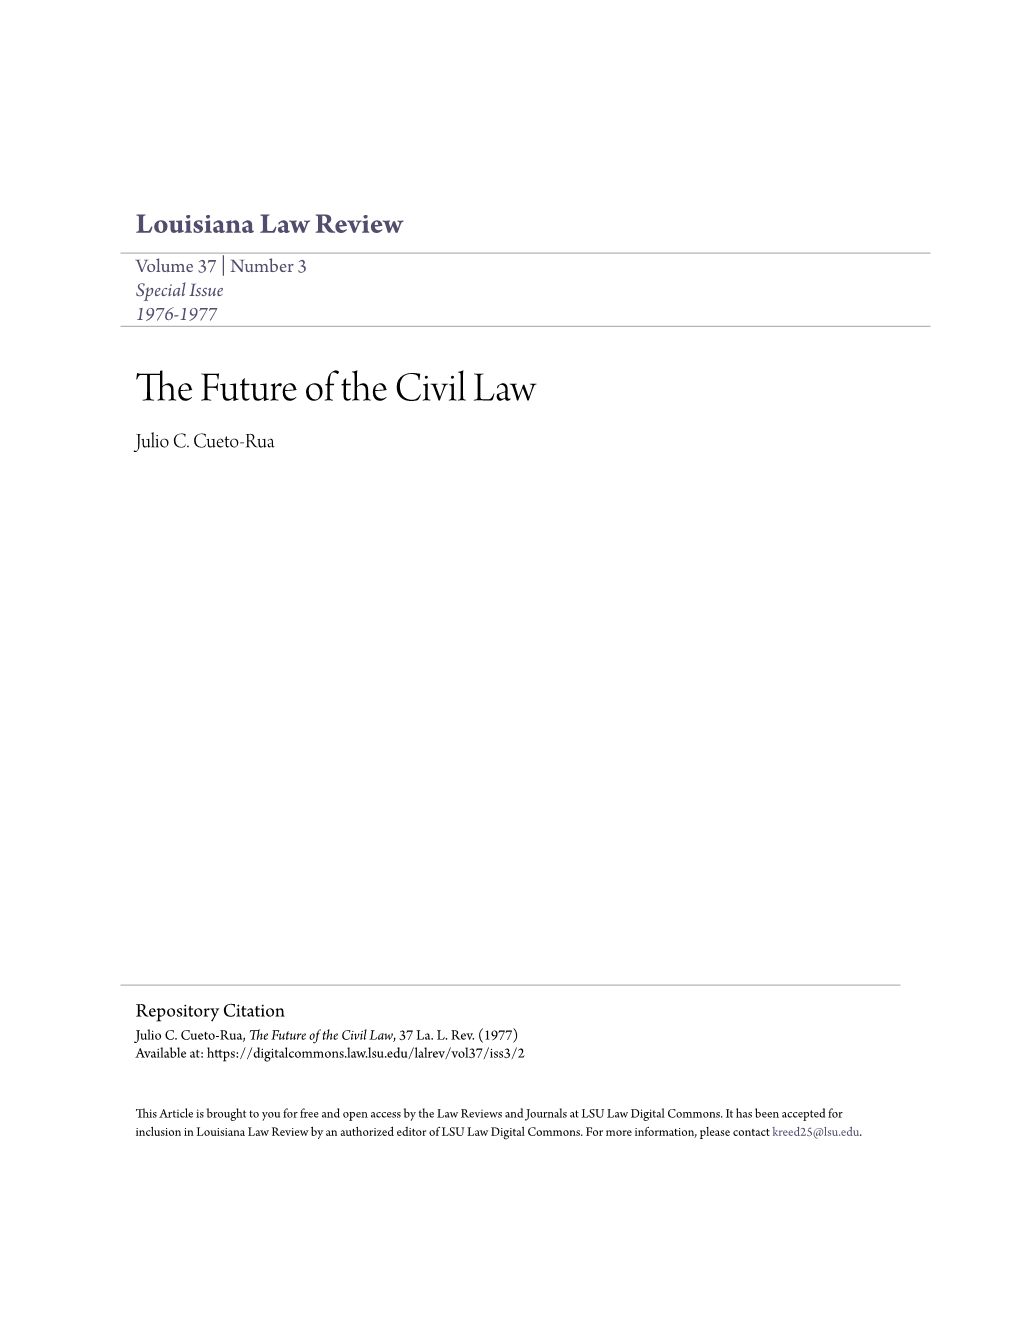 The Future of the Civil Law, 37 La